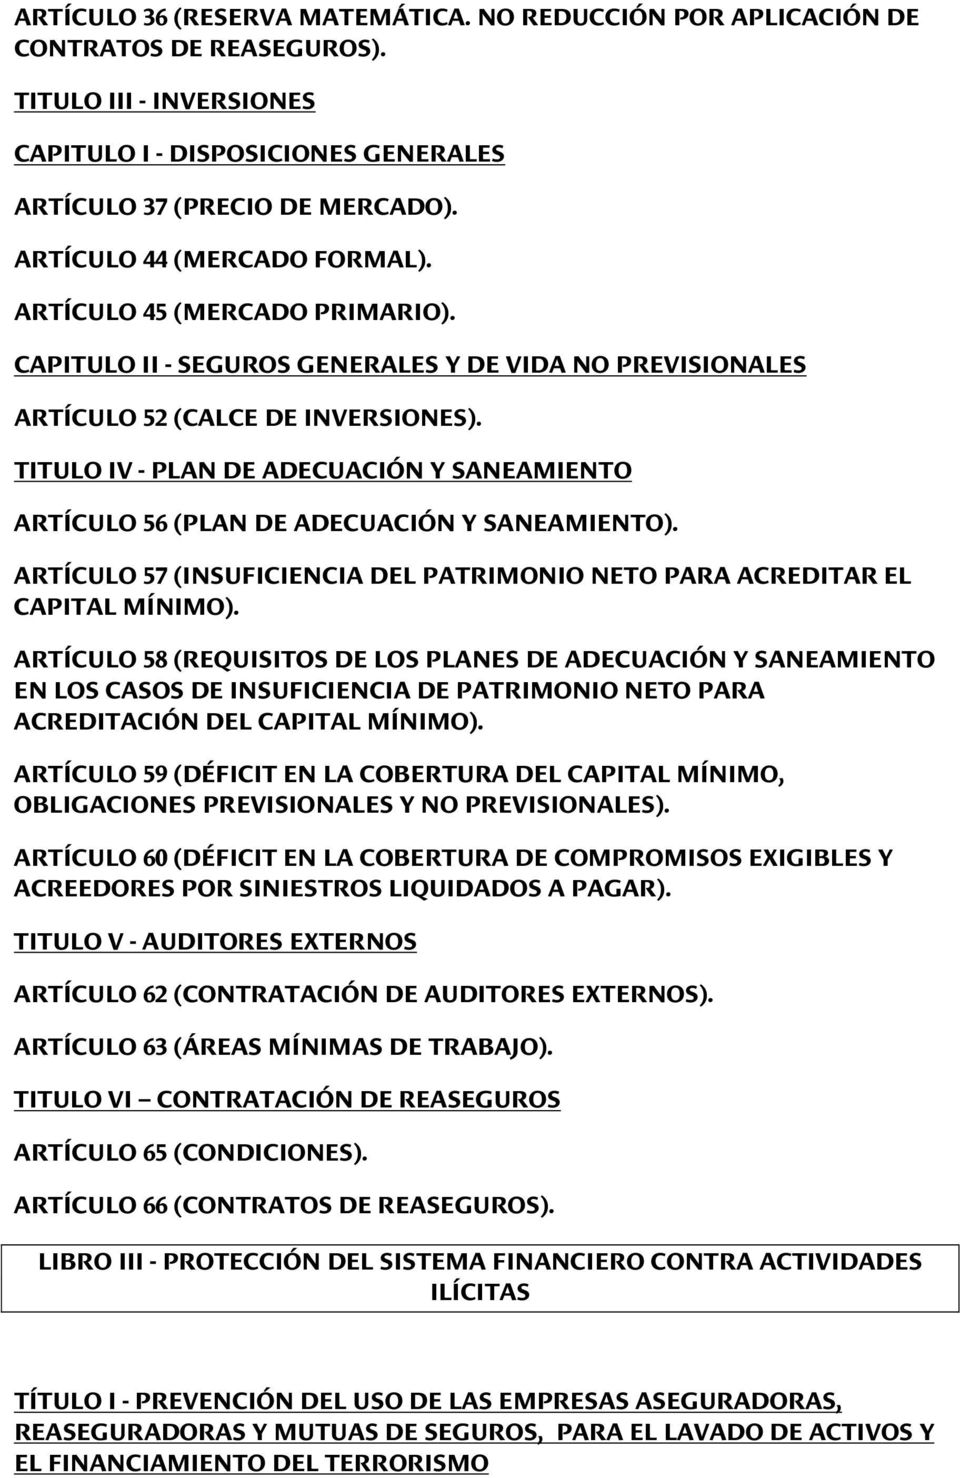 TITULO IV - PLAN DE ADECUACIÓN Y SANEAMIENTO ARTÍCULO 56 (PLAN DE ADECUACIÓN Y SANEAMIENTO). ARTÍCULO 57 (INSUFICIENCIA DEL PATRIMONIO NETO PARA ACREDITAR EL CAPITAL MÍNIMO).